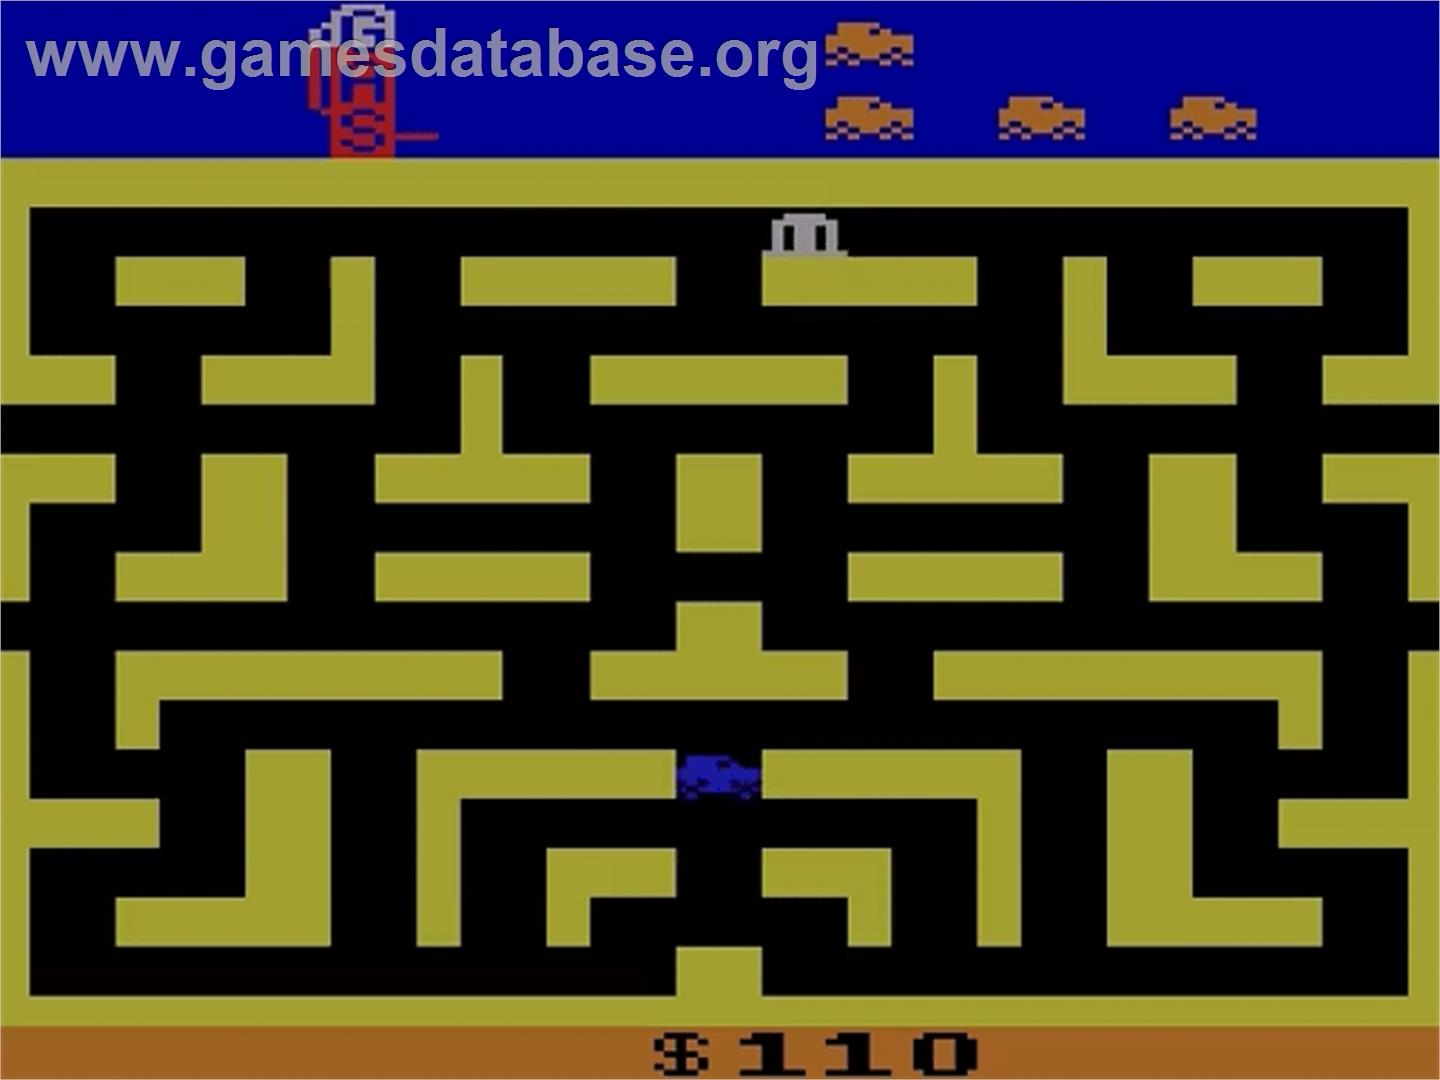 Bank Heist - Atari 2600 - Artwork - Title Screen